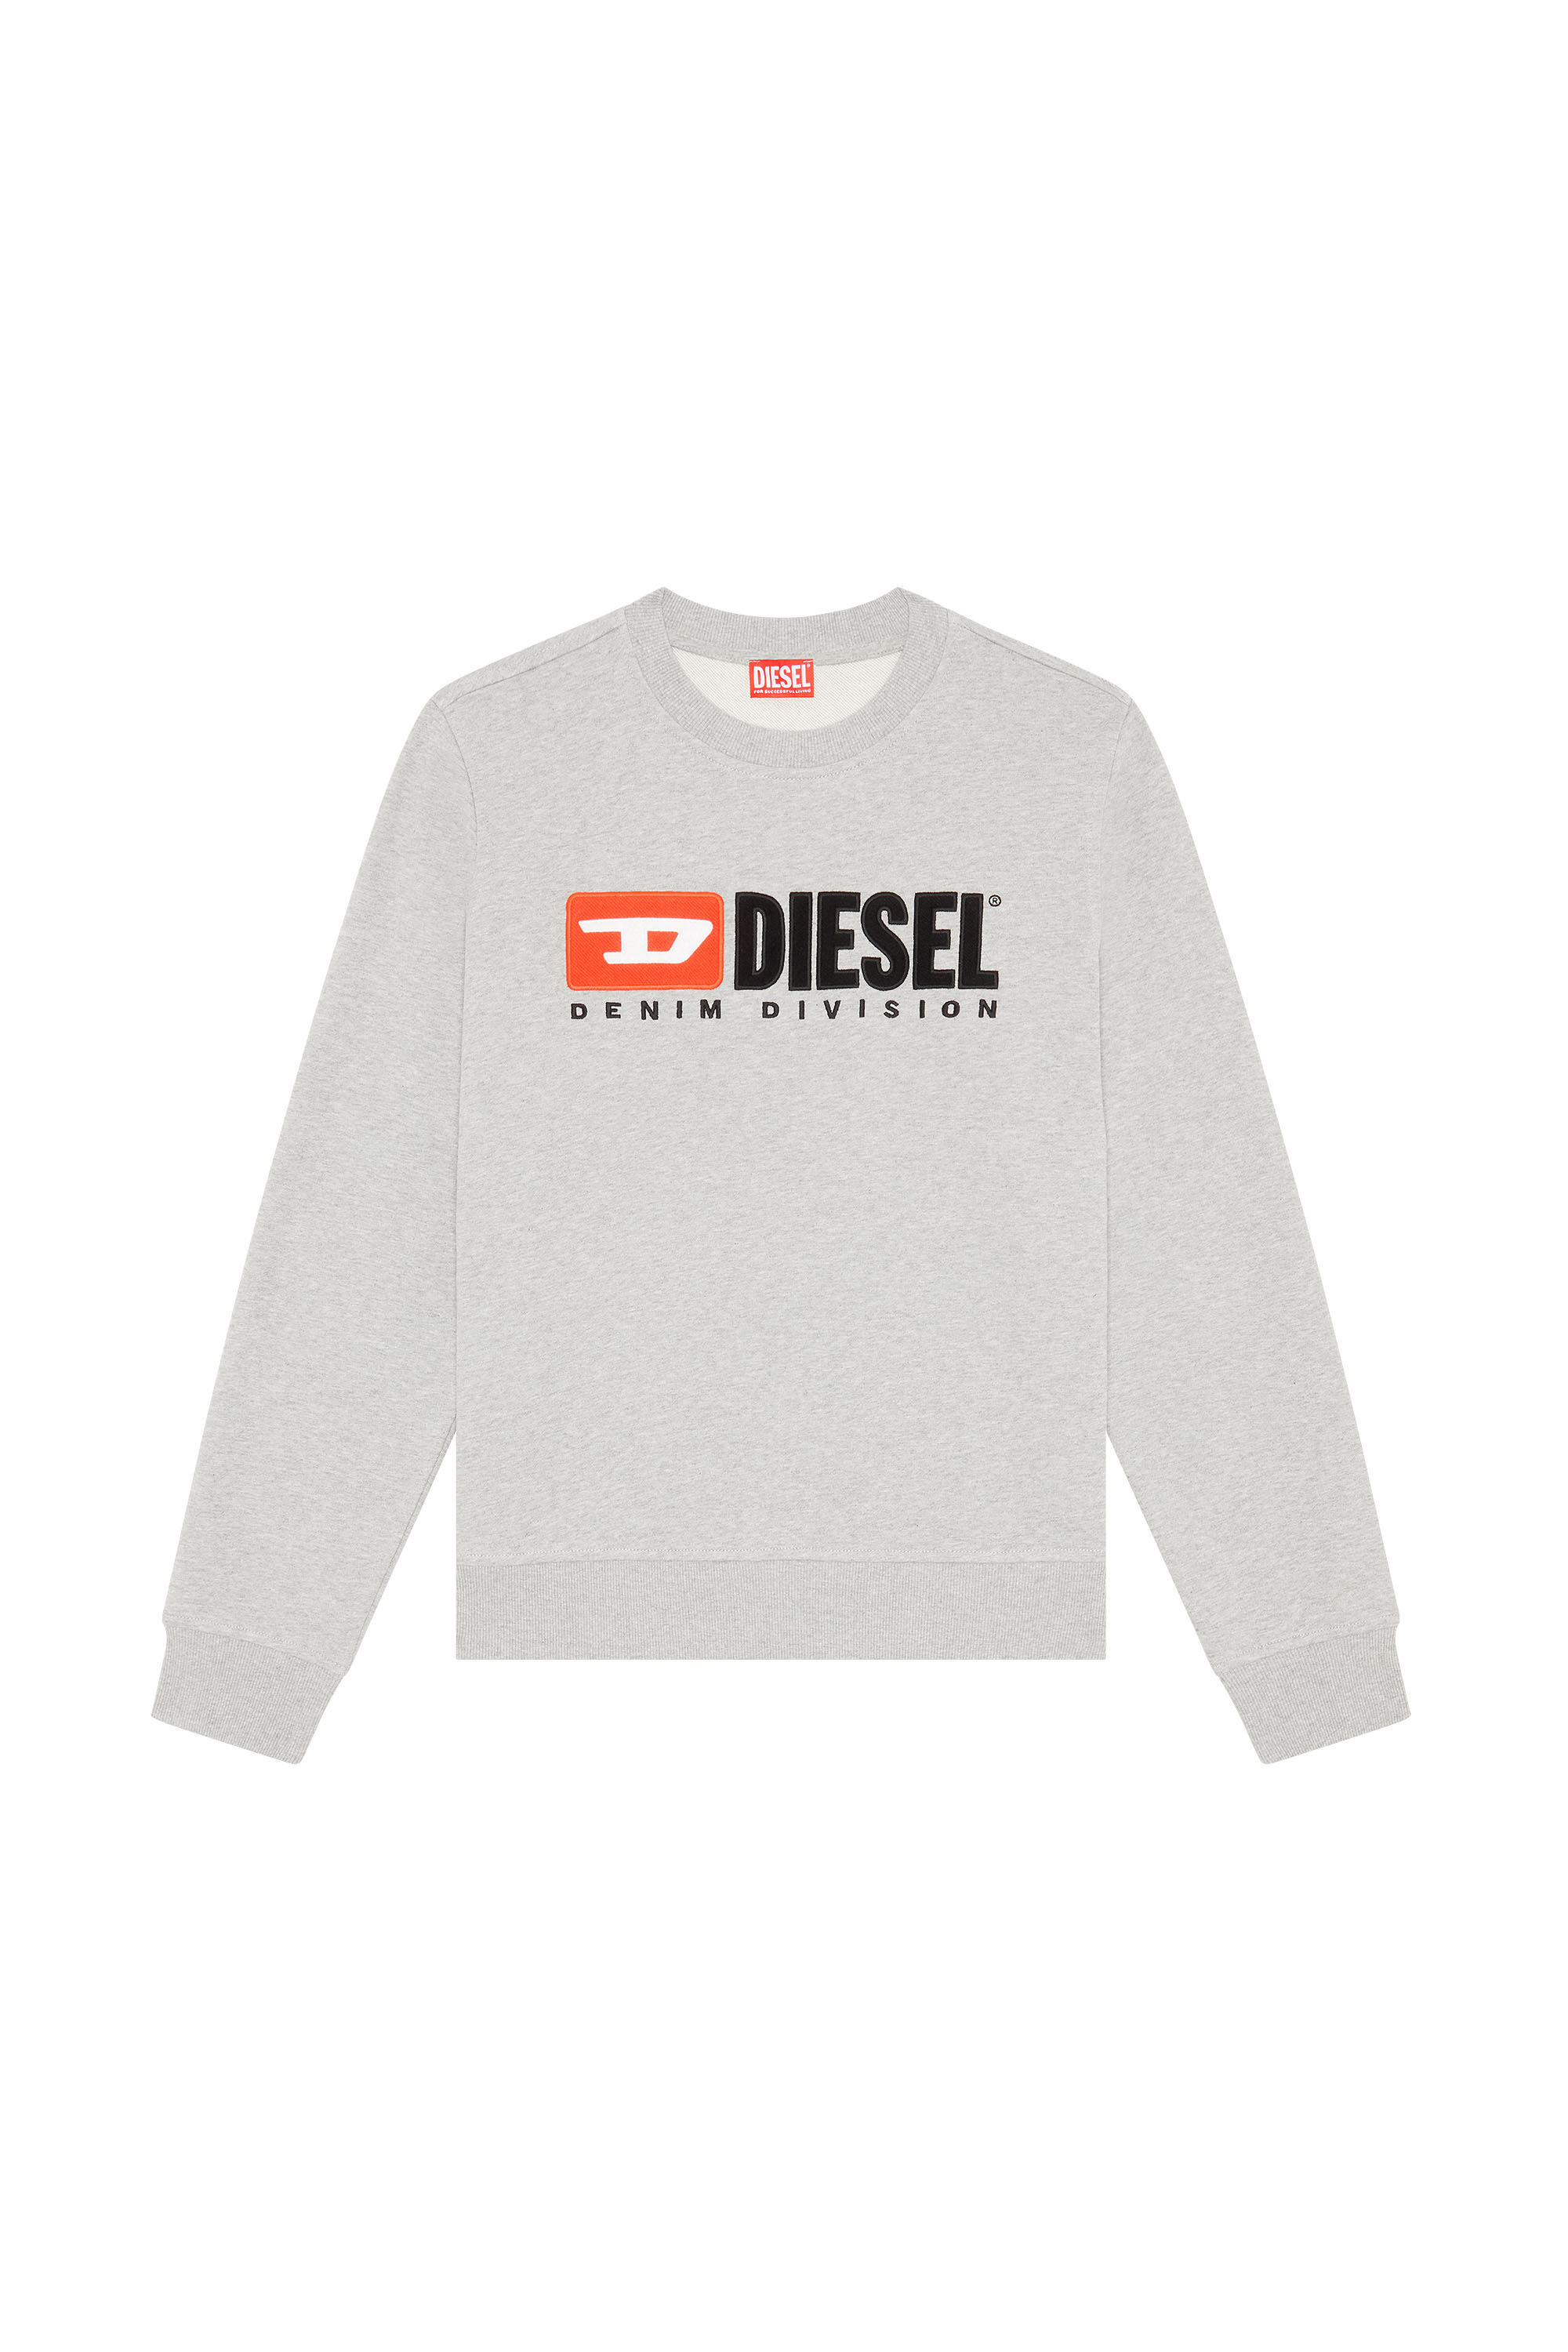 Diesel - S-GINN-DIV, Grau - Image 2